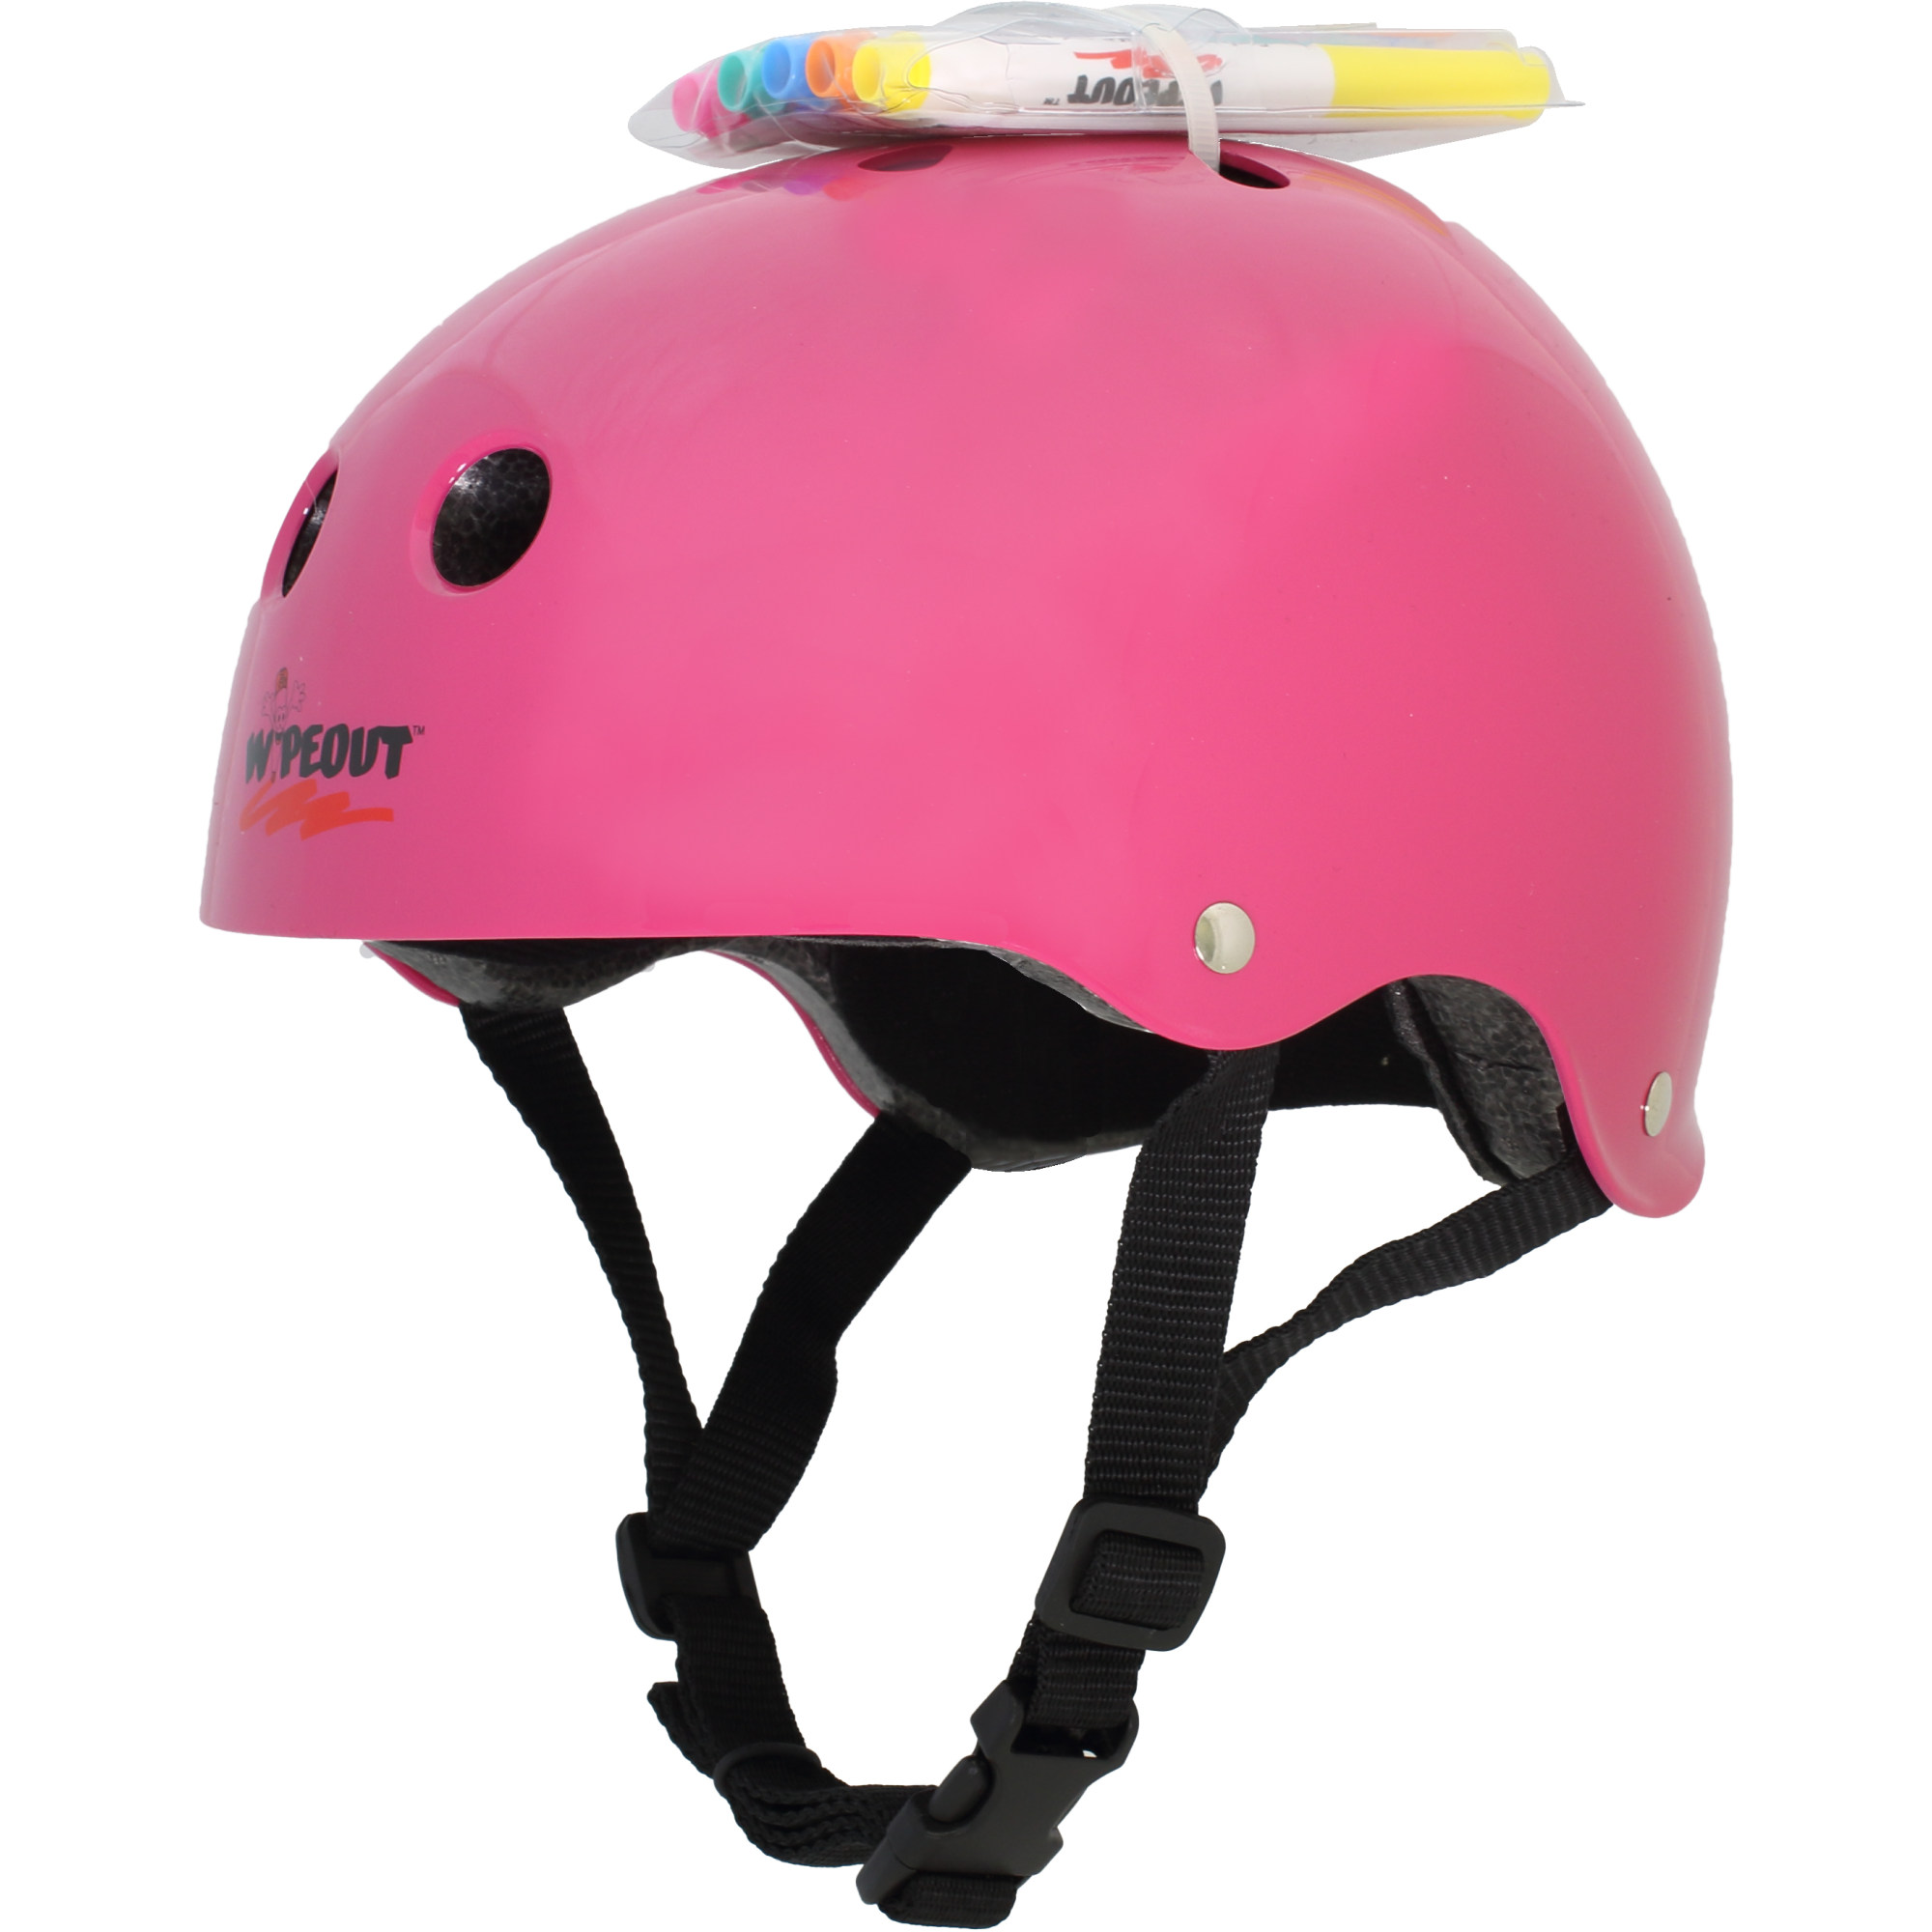 Шлем защитный спортивный WIPEOUT Neon Pink с фломастерами и трафаретами размер M 5+ обхват головы 49-52 см - фото 4